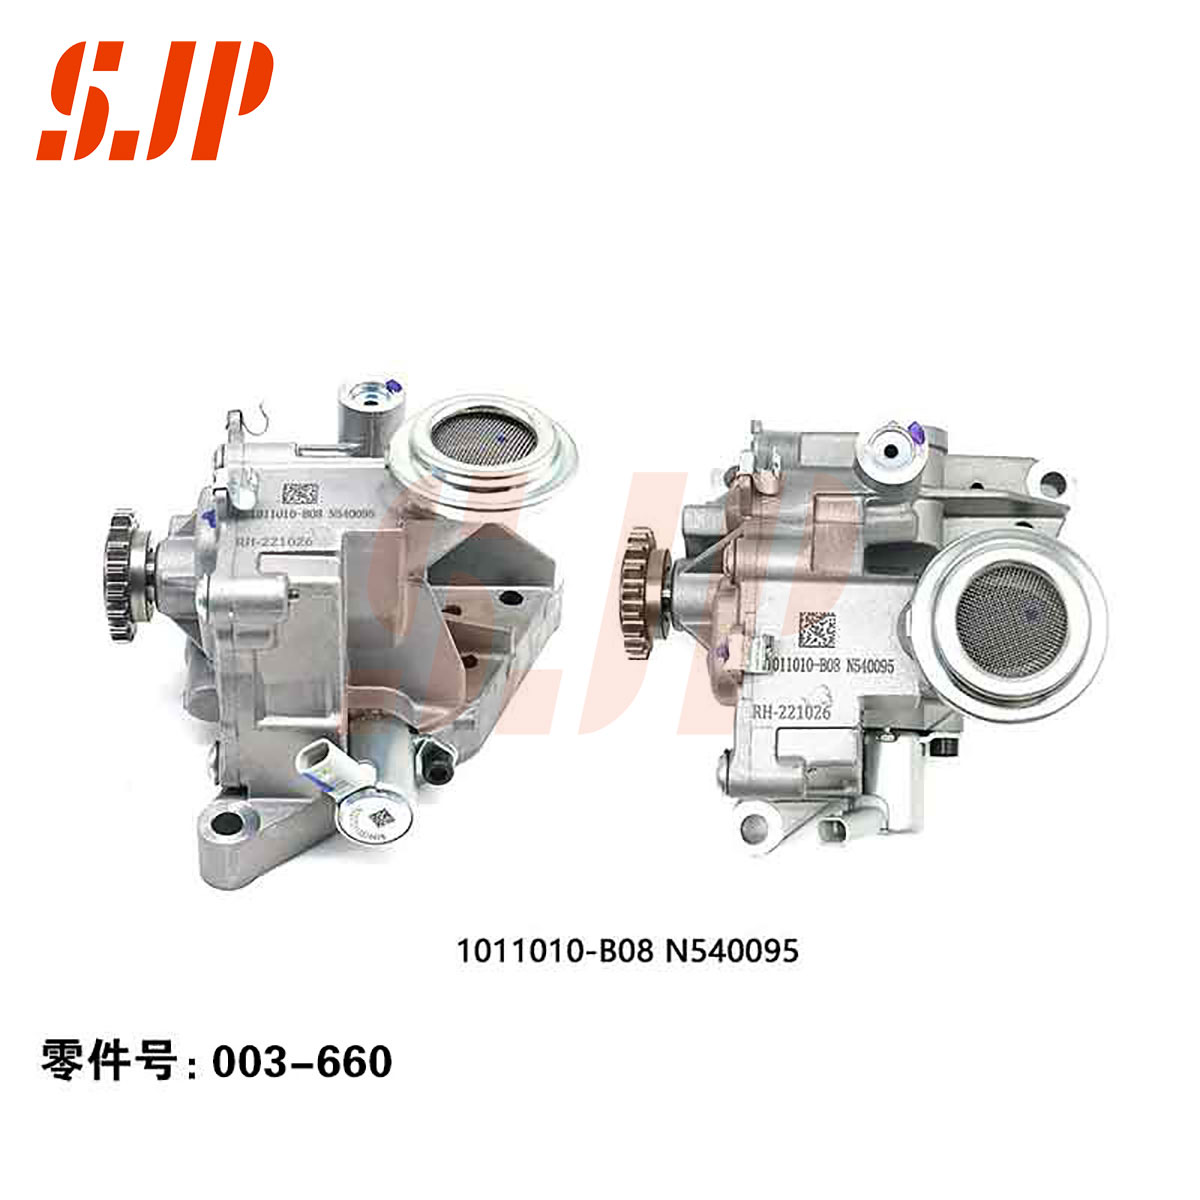 SJ-003-660 Oil Pump For 478/b08